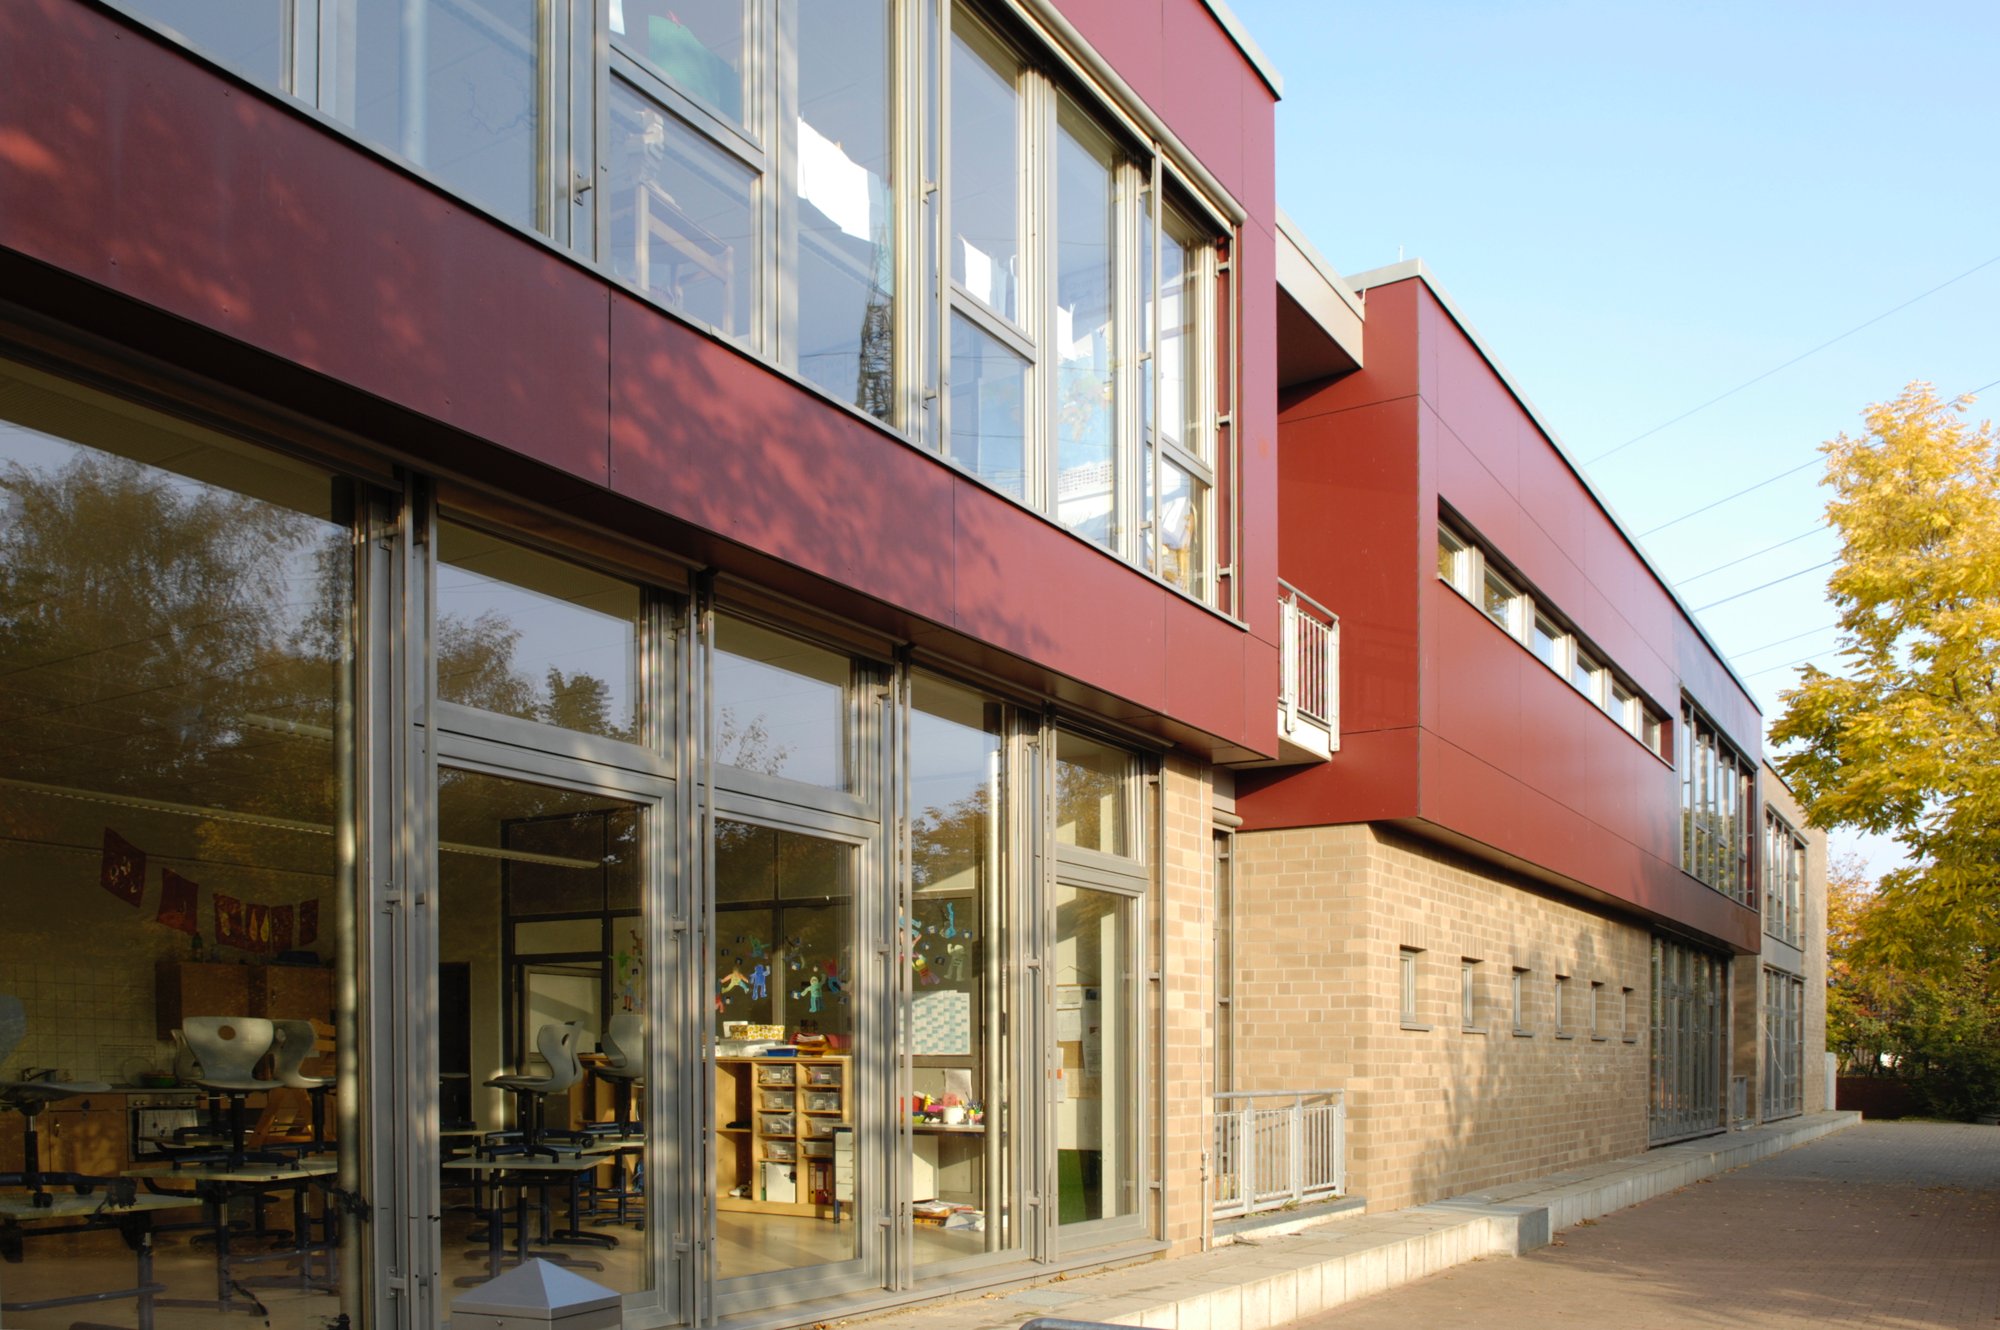 Ein rotes Schulgebäude, schräg fotografiert, mit großen Fenstern